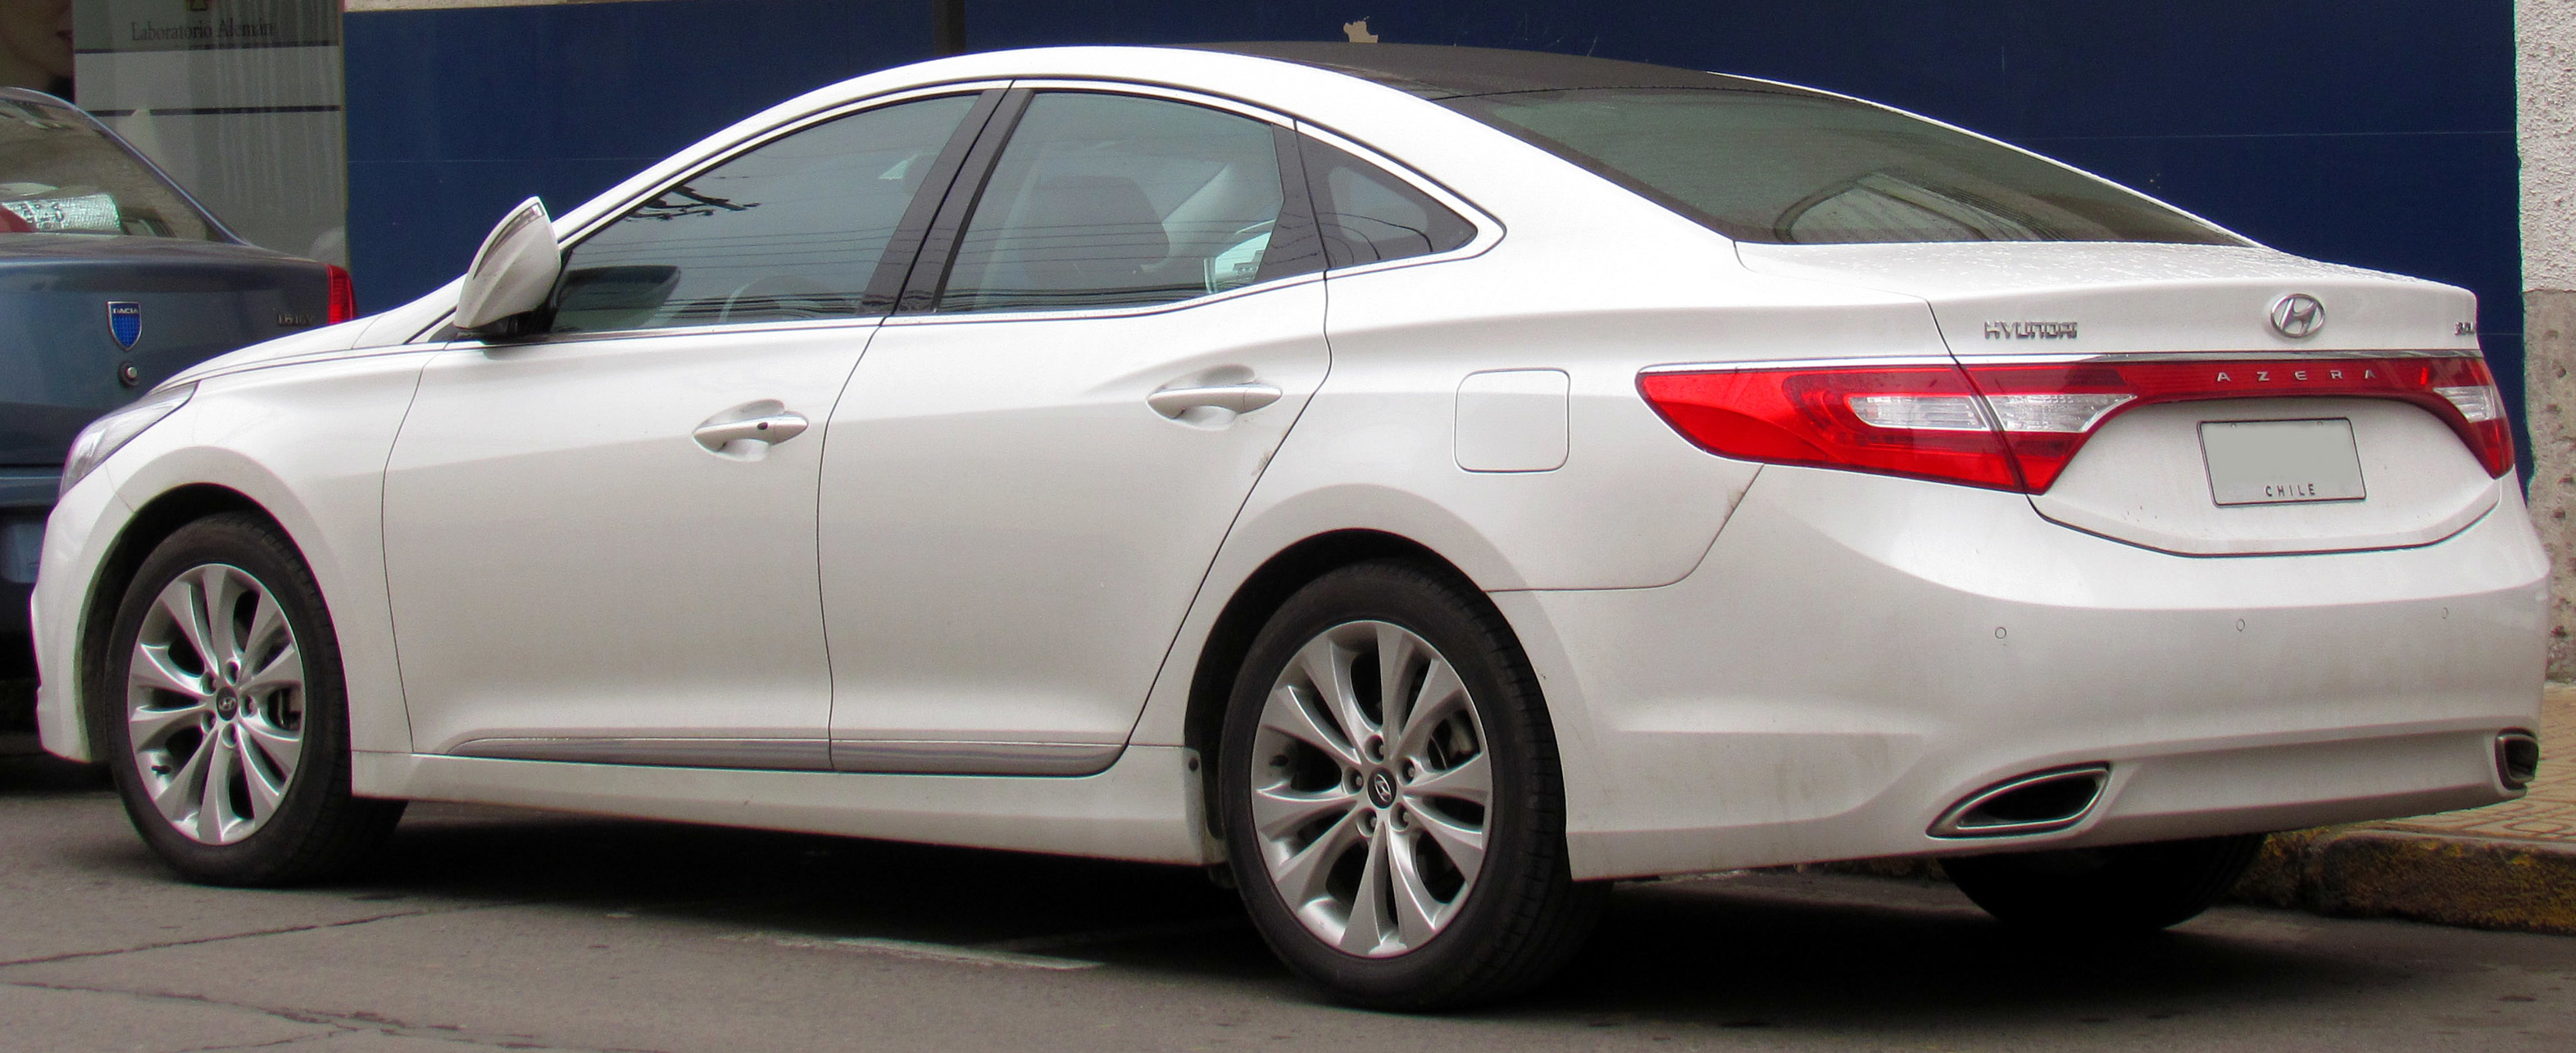 File:Hyundai Azera V6 GLS 2014 (rear).jpg - Wikimedia Commons